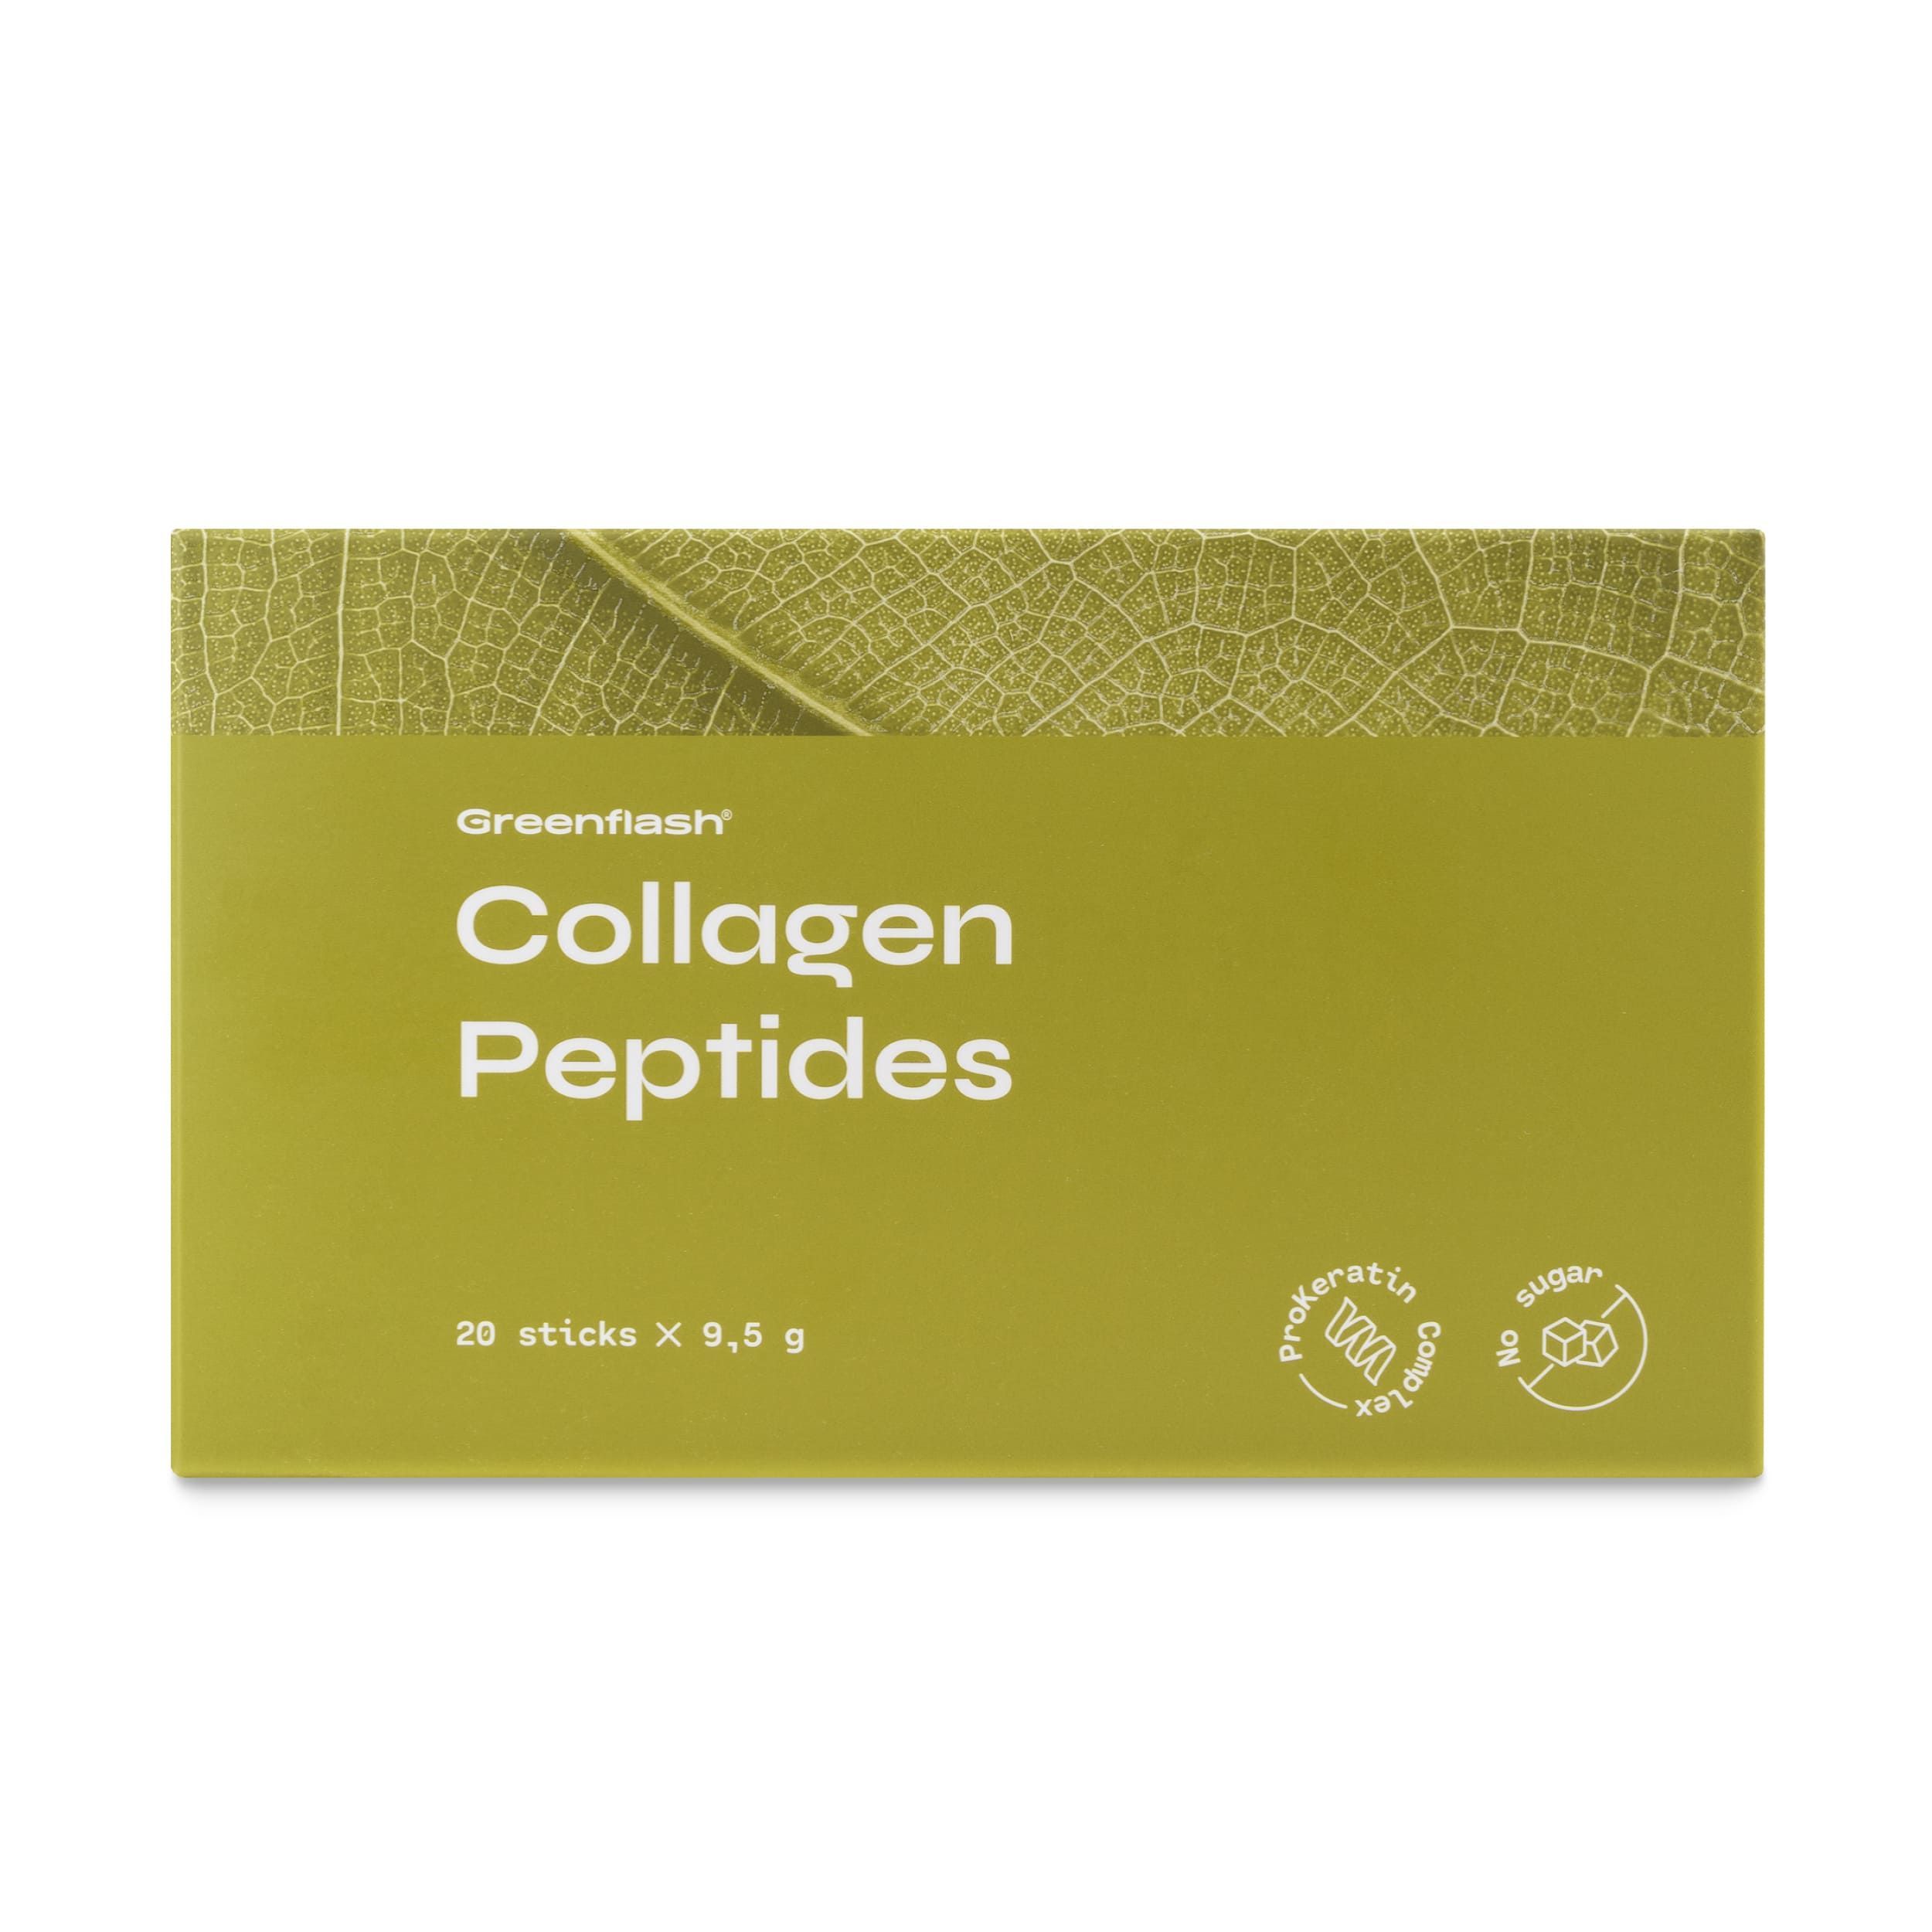 Коллаген пептидный 20 стиков. Collagen Peptides — «коллаген Пептидс». Коллаген Пептидс НЛ. Коллаген nl с пептидами. Коллаген 20 стиков